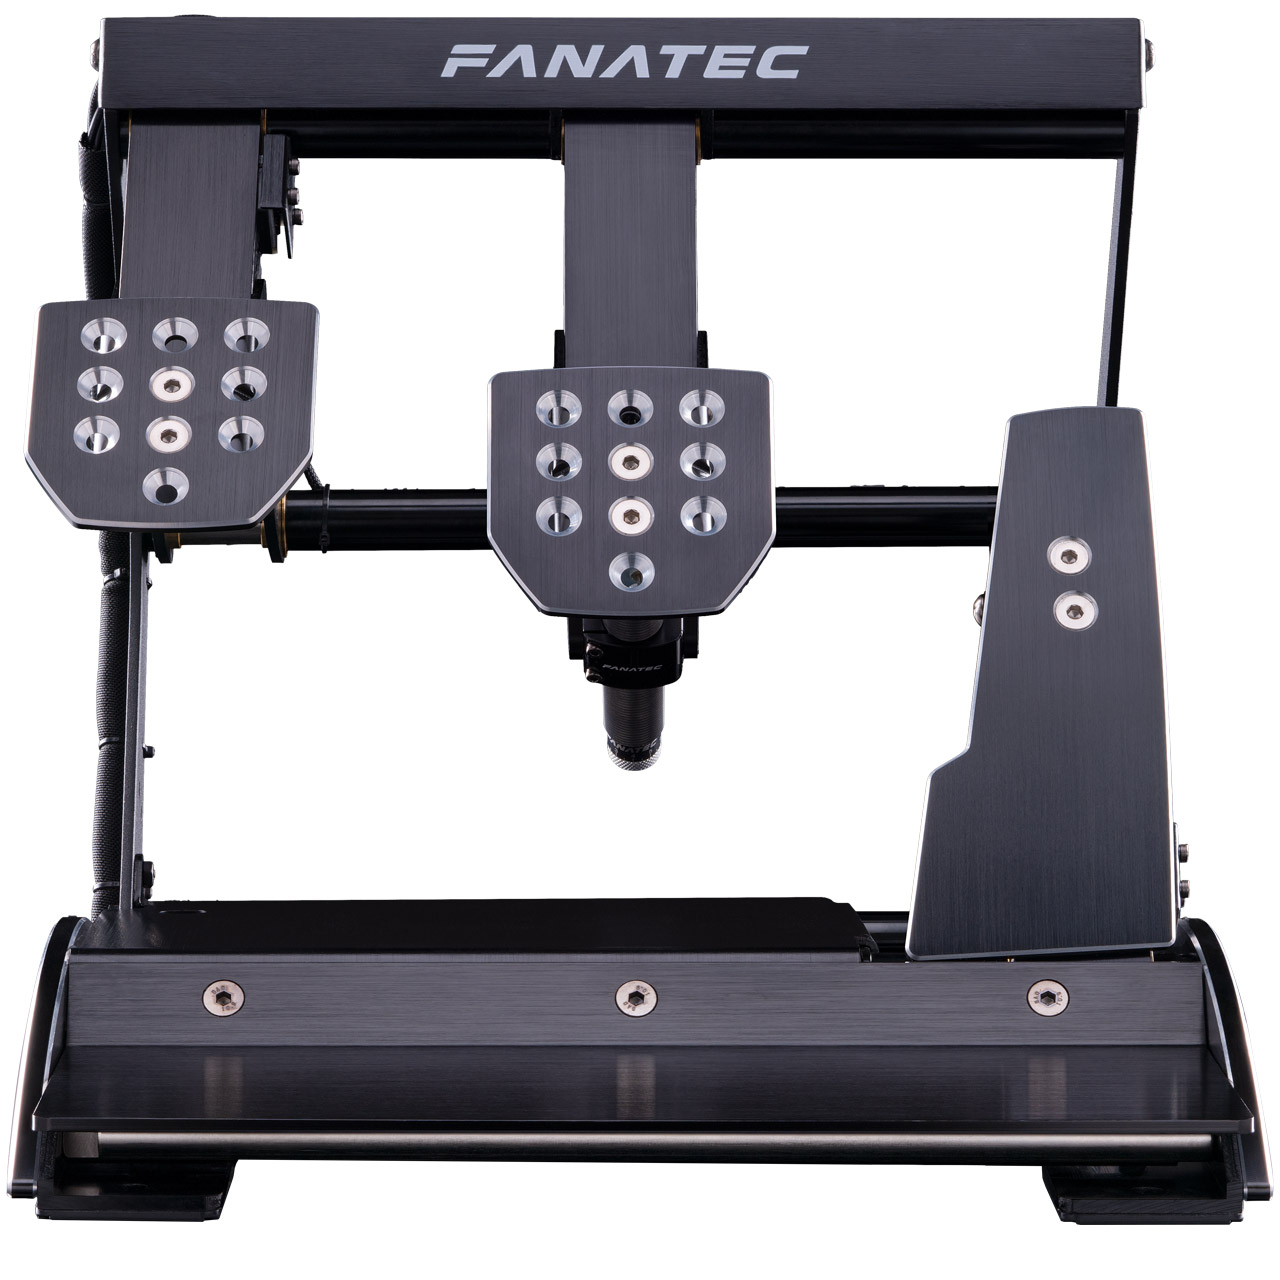 お得なセット価格 FANATEC V3 Pedals ClubSport PCゲーム